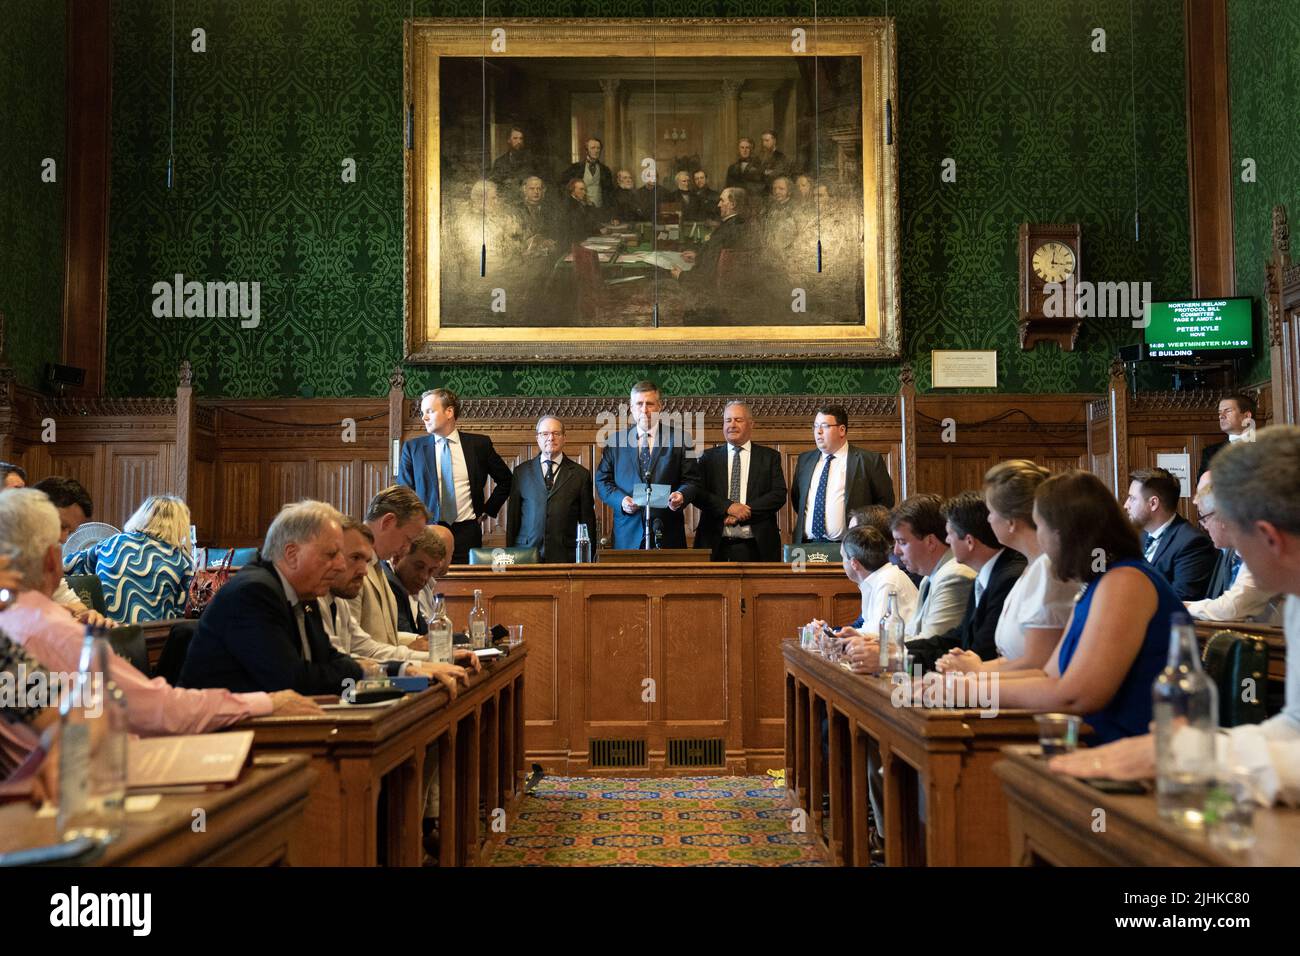 Sir Graham Brady (dritter von links), Vorsitzender des Ausschusses 1922, gibt die Ergebnisse der vierten Wahlrunde beim Führungswettbewerb der Konservativen Partei im Londoner Parlamentsgebäude bekannt. Bilddatum: Dienstag, 19. Juli 2022. Stockfoto